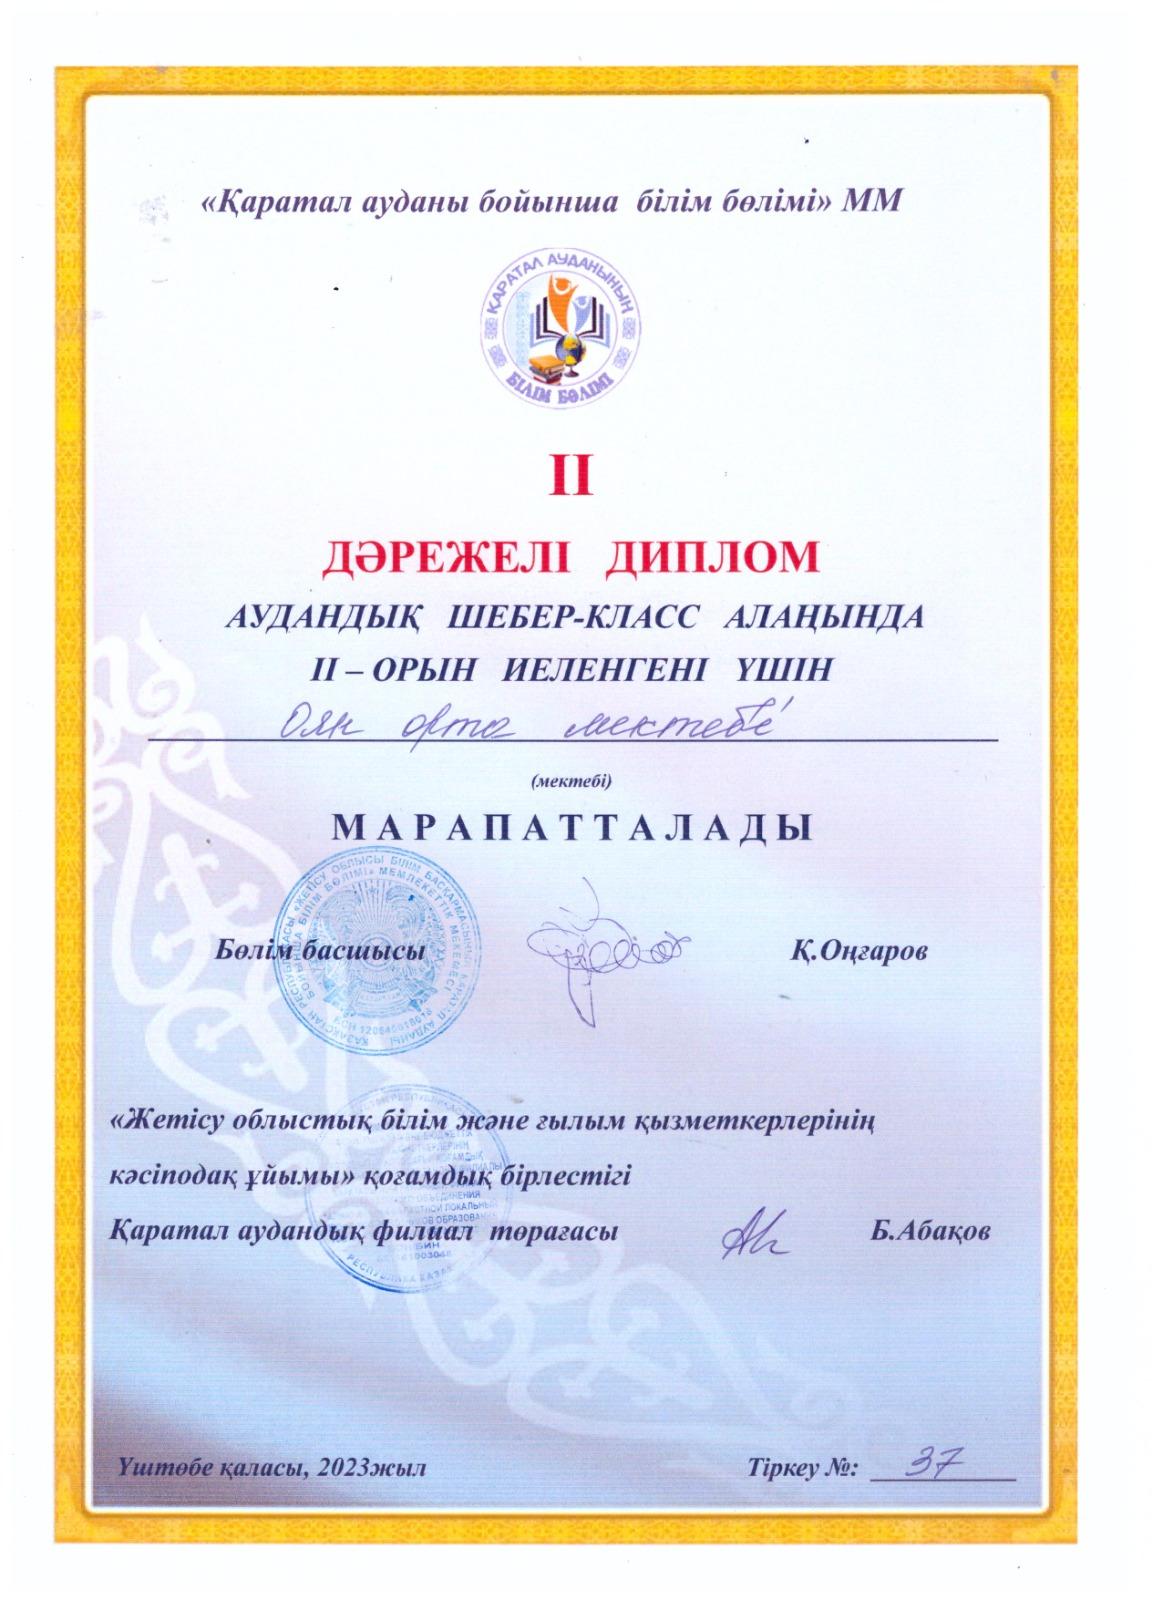 Аудандық шебер-класс алаңында ІІ дәрежелі диплом